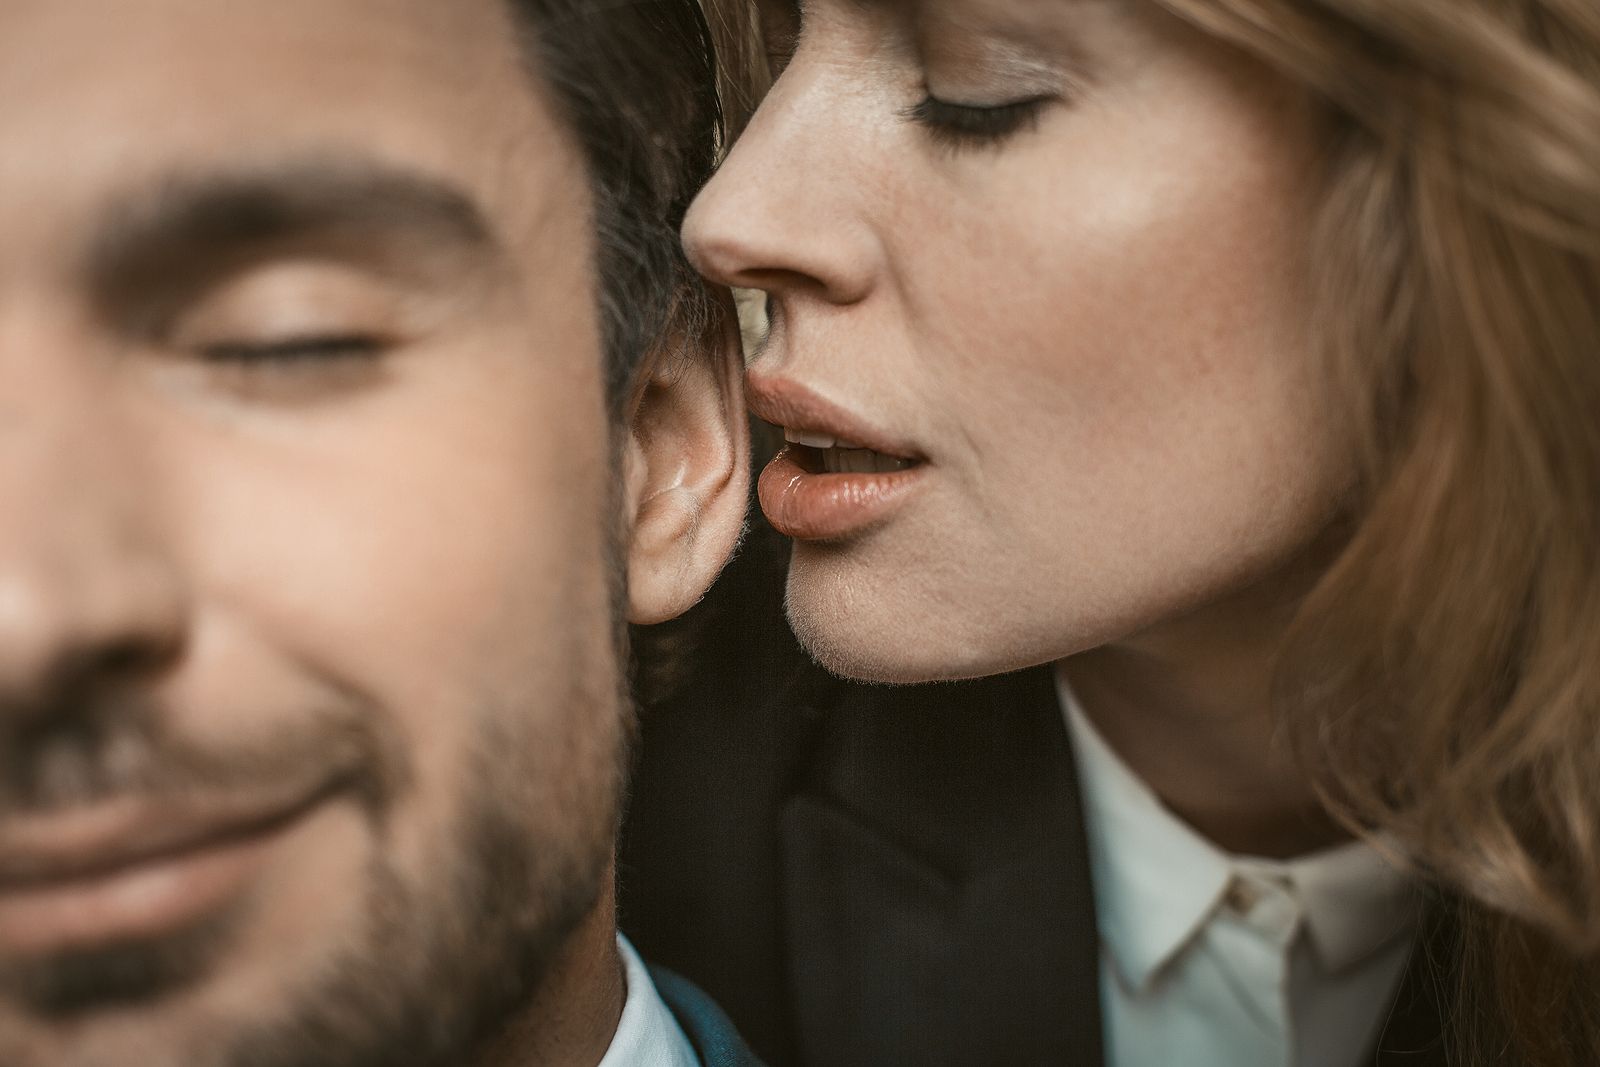 Estas son las partes más eróticas de hombres y mujeres Foto: bigstock